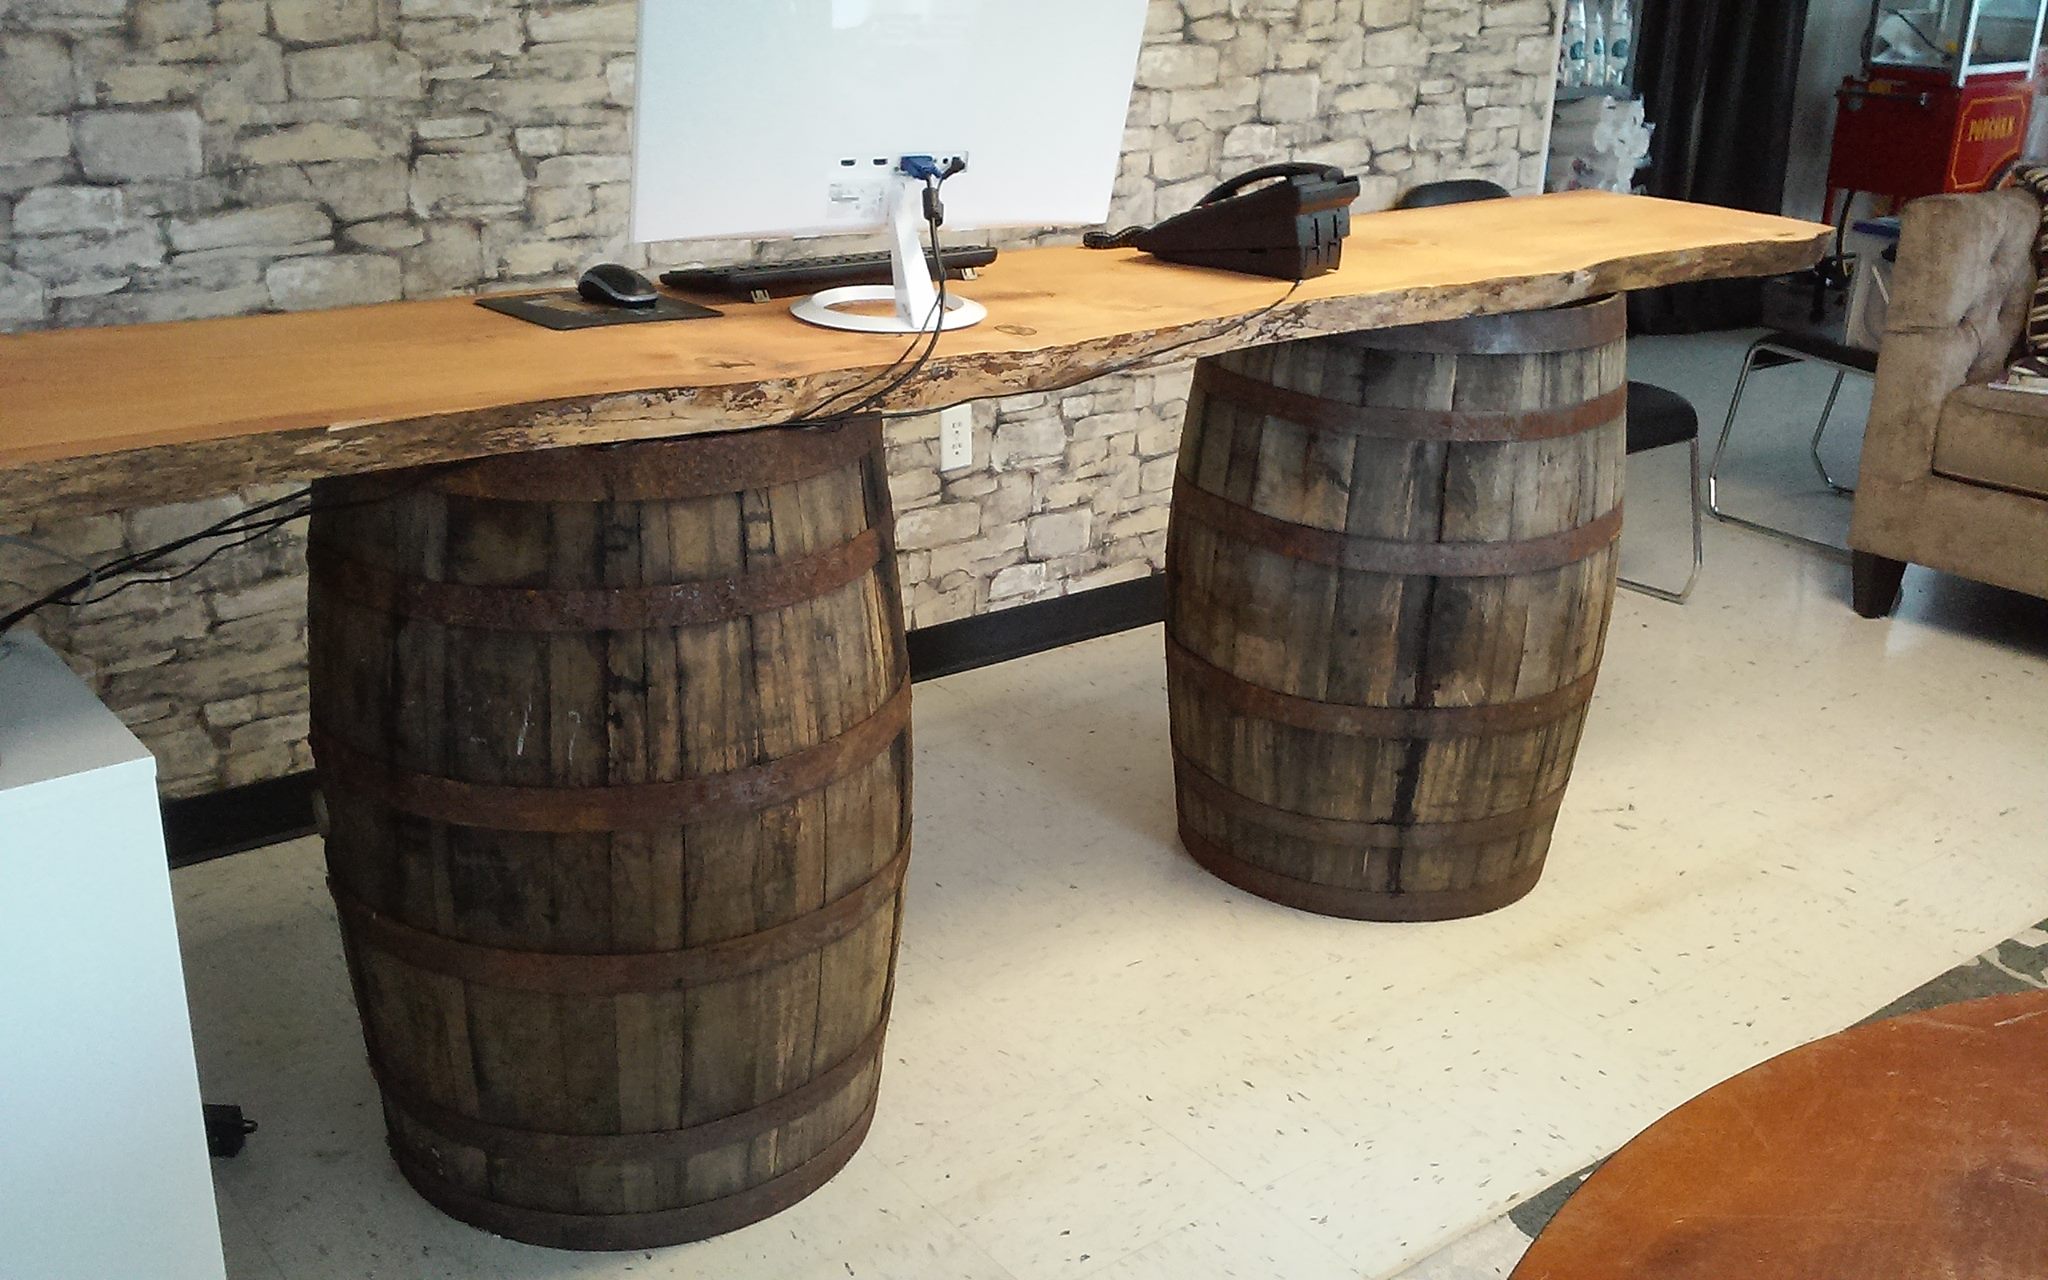 Whiskey Barrel Bar